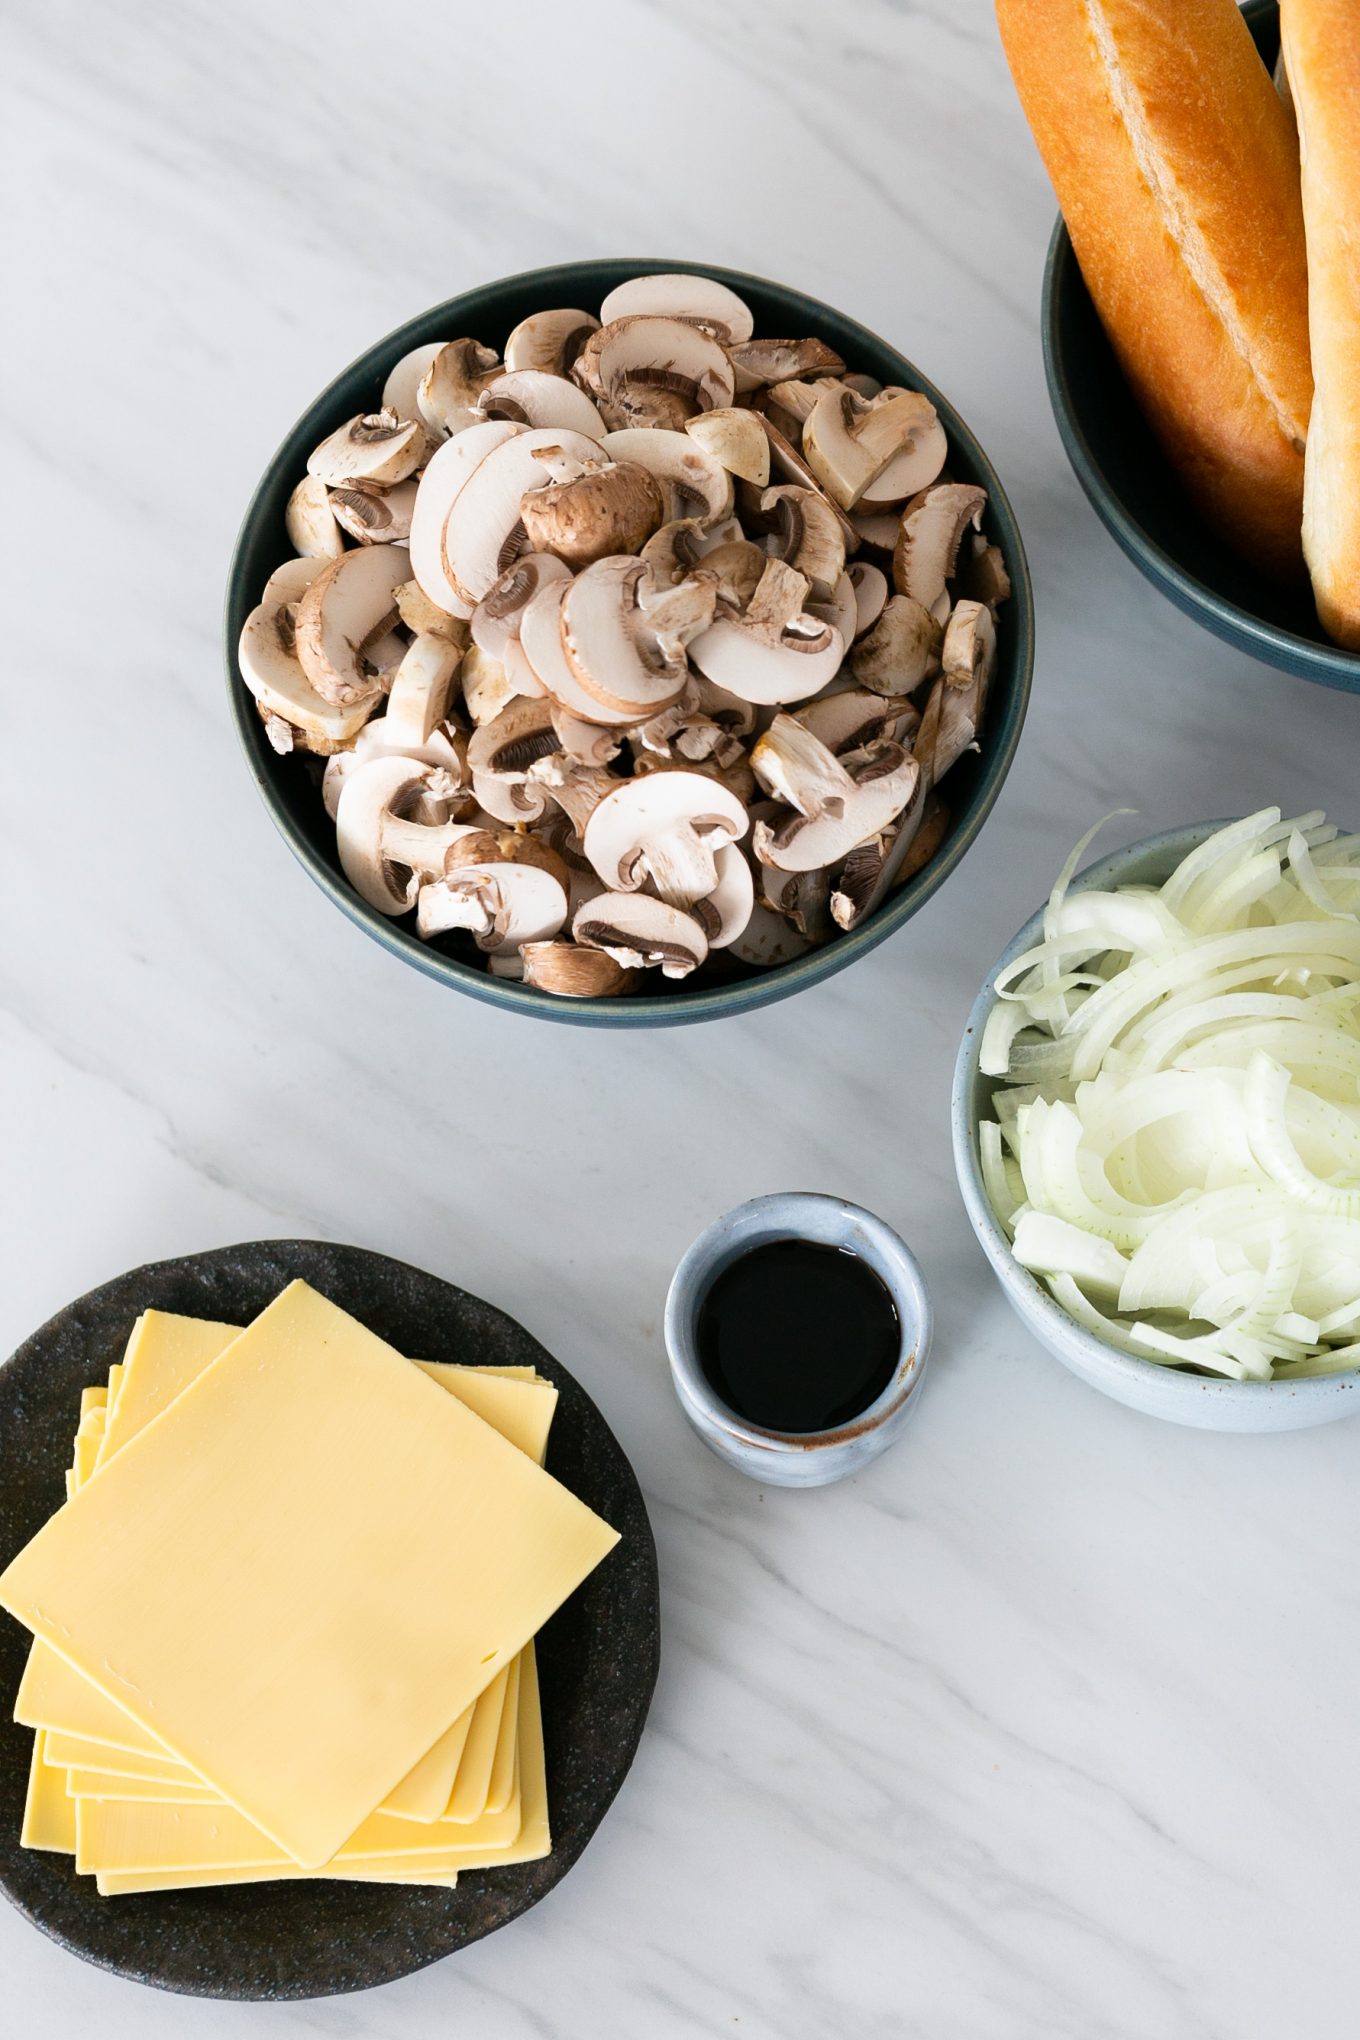 Ingredients to prepare a vegan and mushroom sandwich